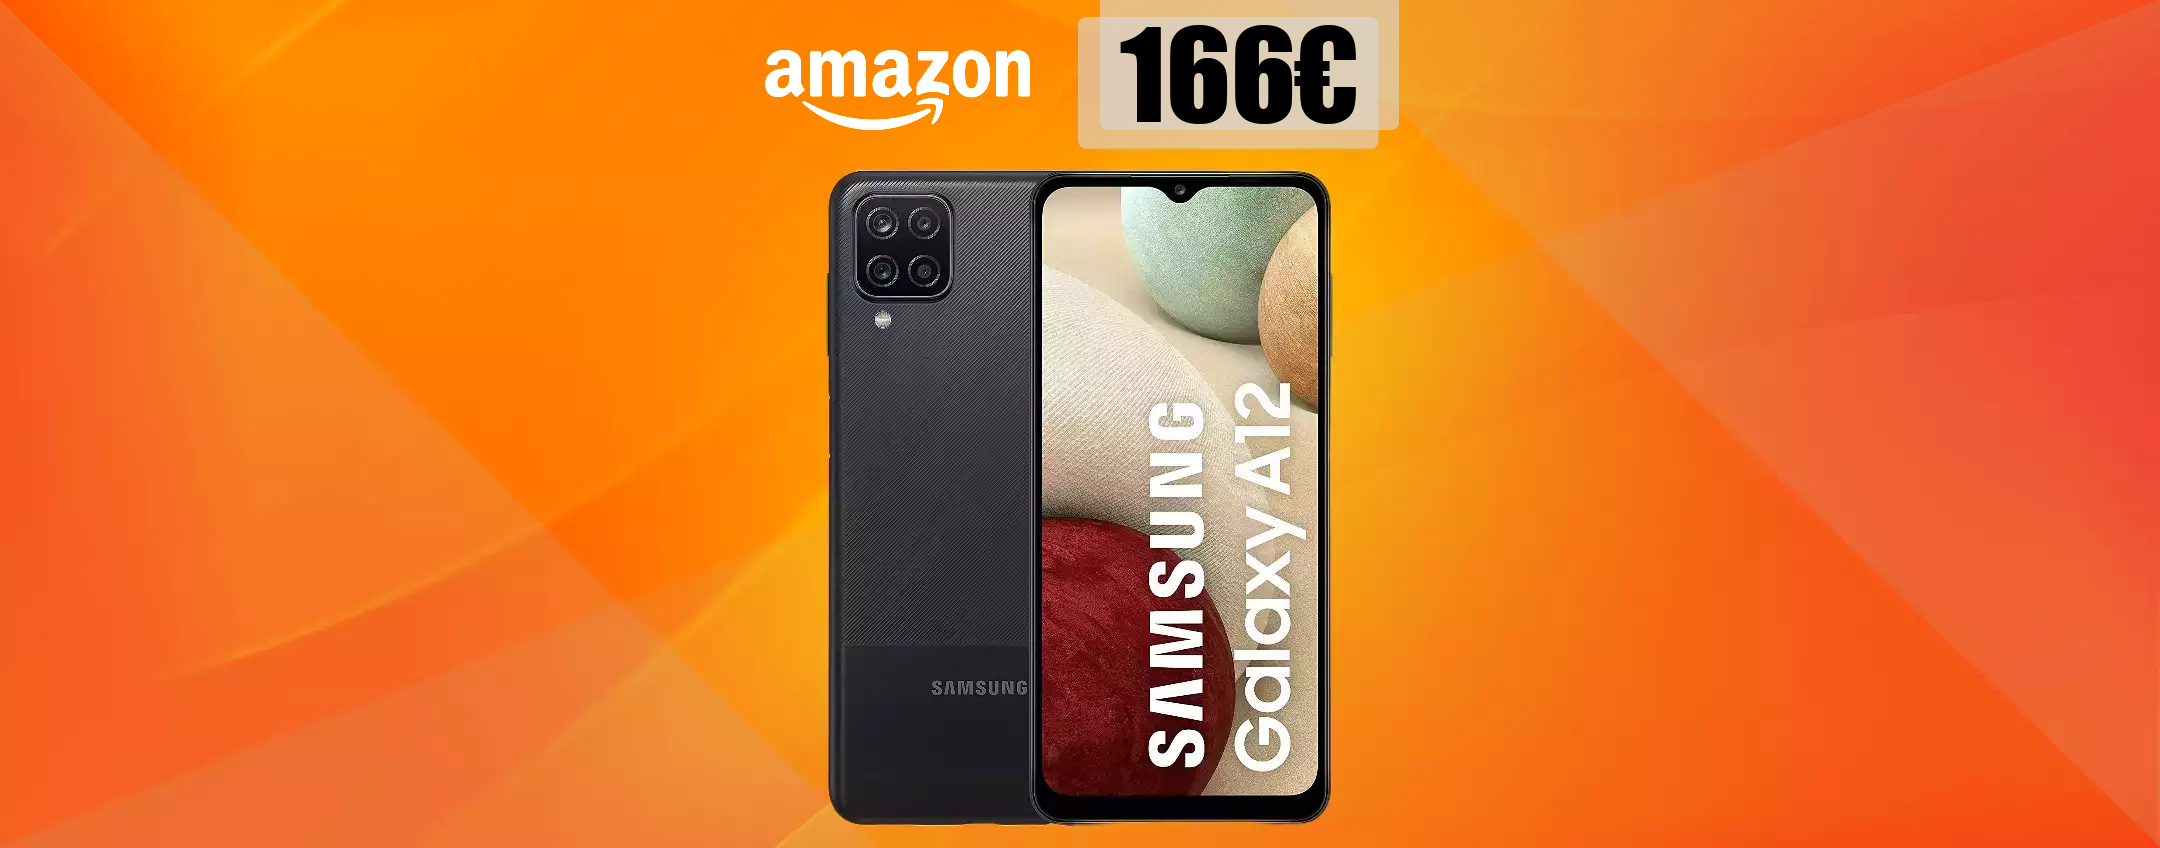 Samsung Galaxy A12 con MEGA batteria e quad-camera: già tuo a 166€